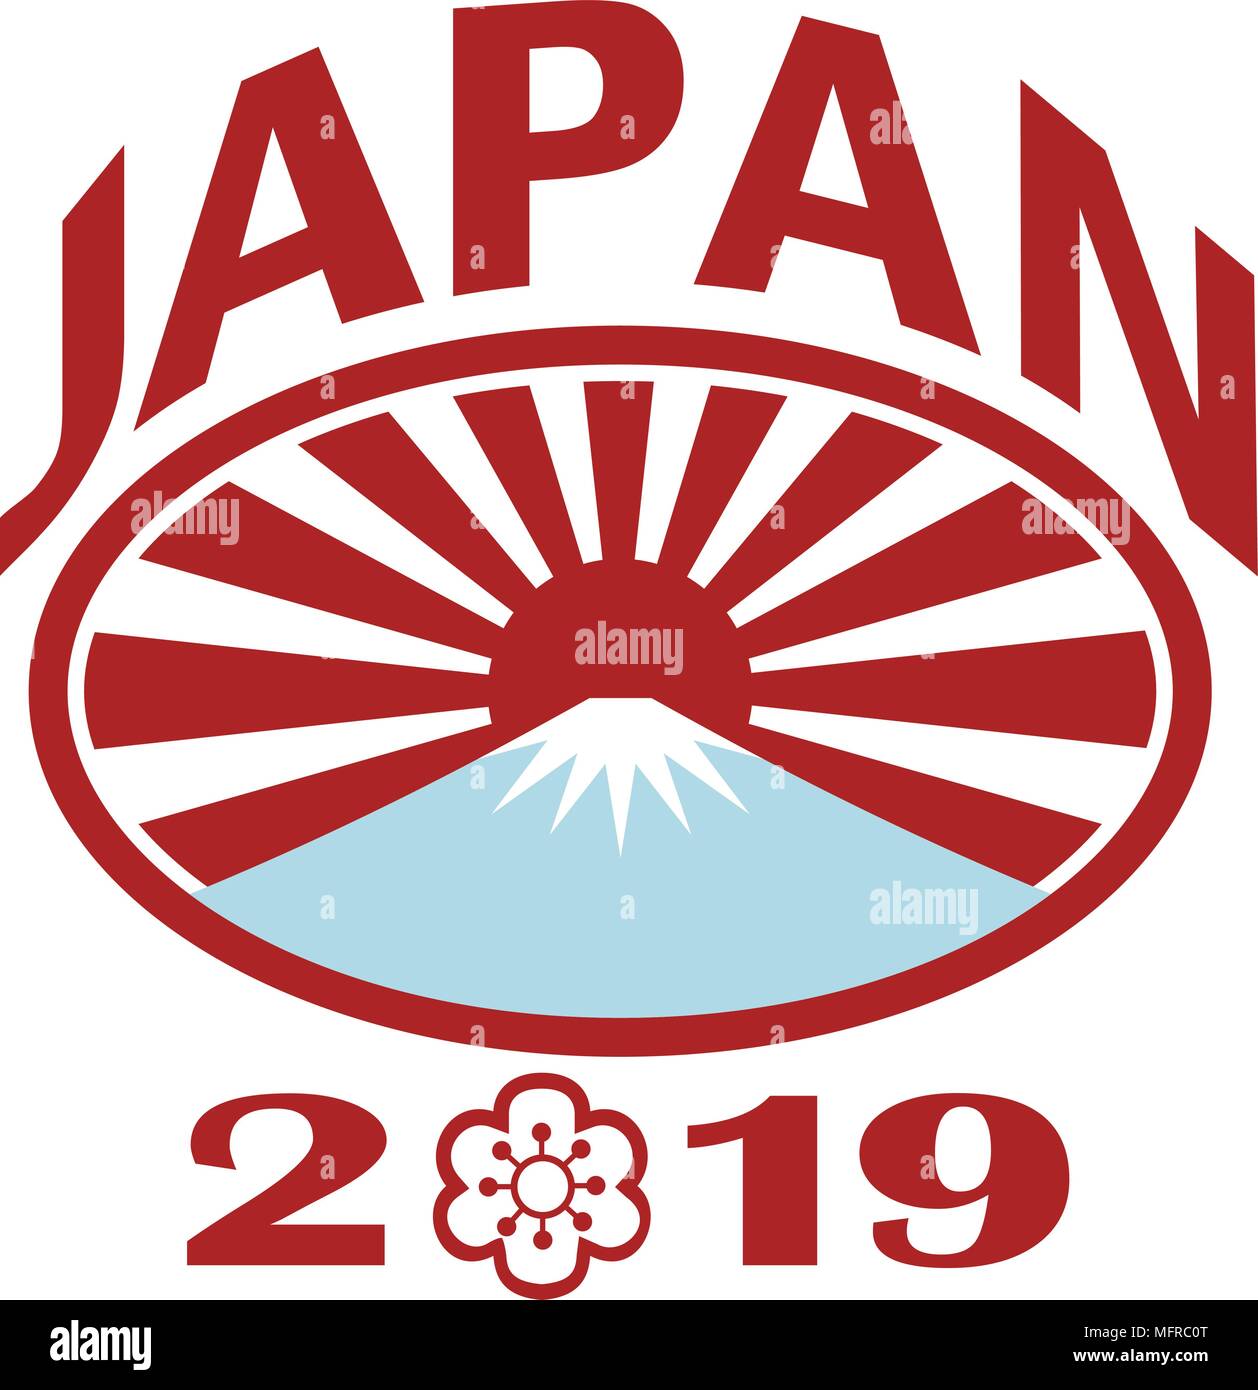 Retro Style Abbildung eines rugby ball mit Japanischen aufgehende Sonne und den Fuji Berg innen oval mit Worten Japan 2019 und Sakura oder Kirsche bloss Stock Vektor